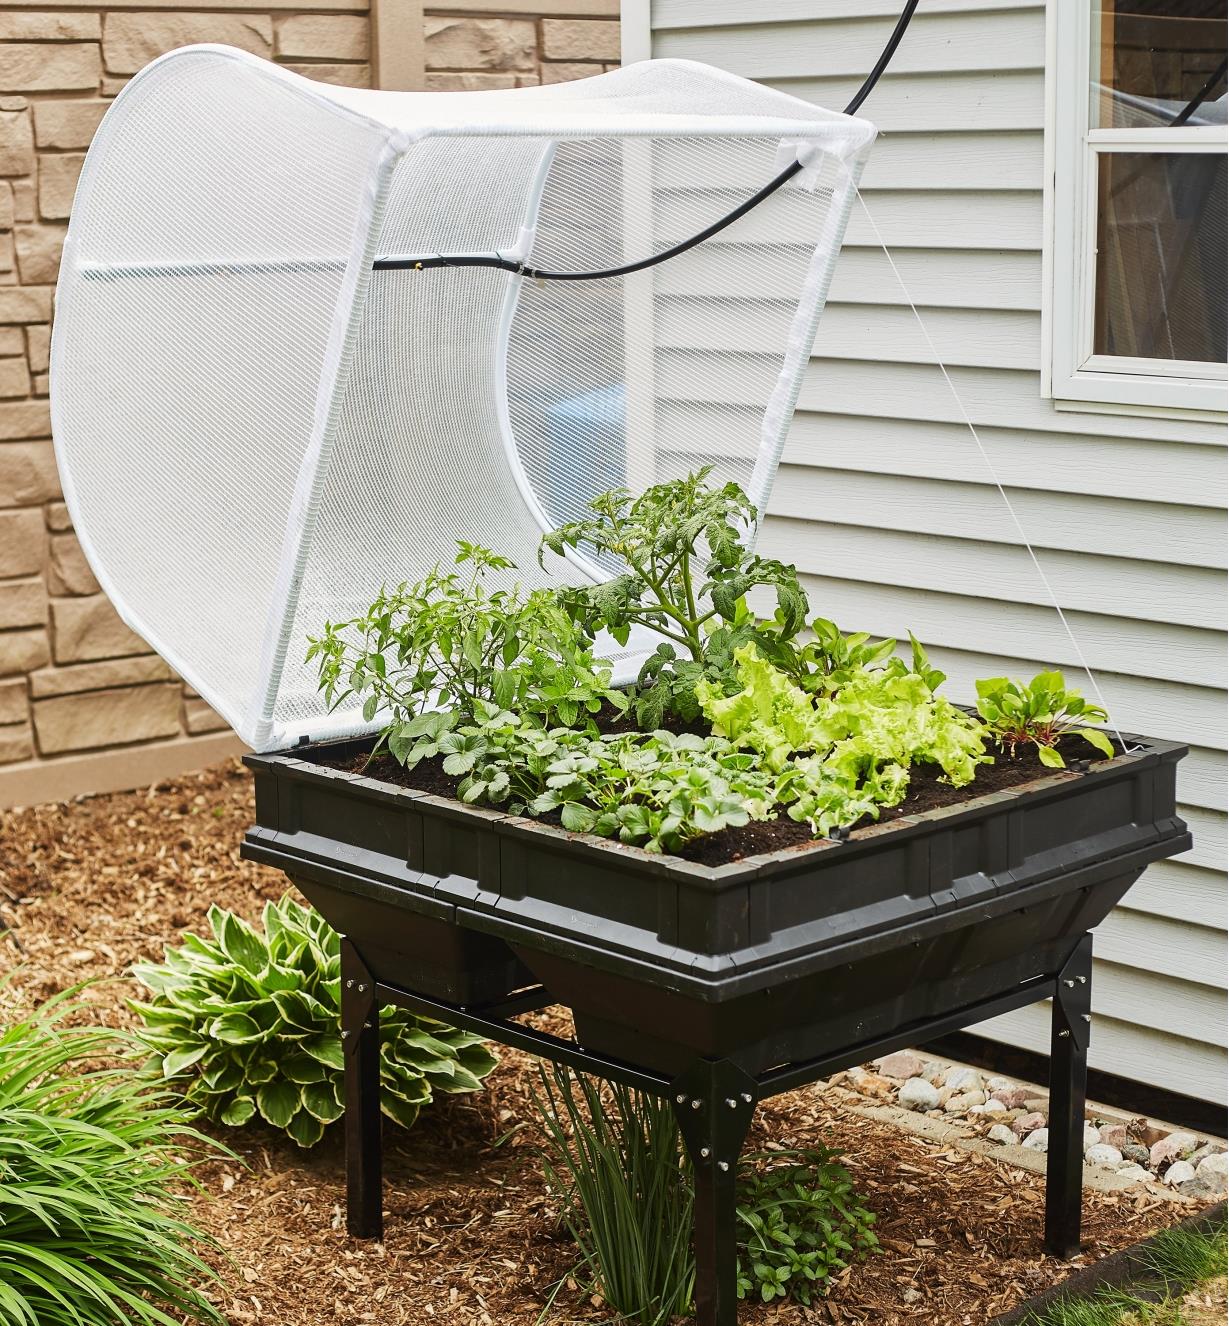 Bac de culture Vegepod avec support au couvercle ouvert rempli de plant de légumes dans un jardin